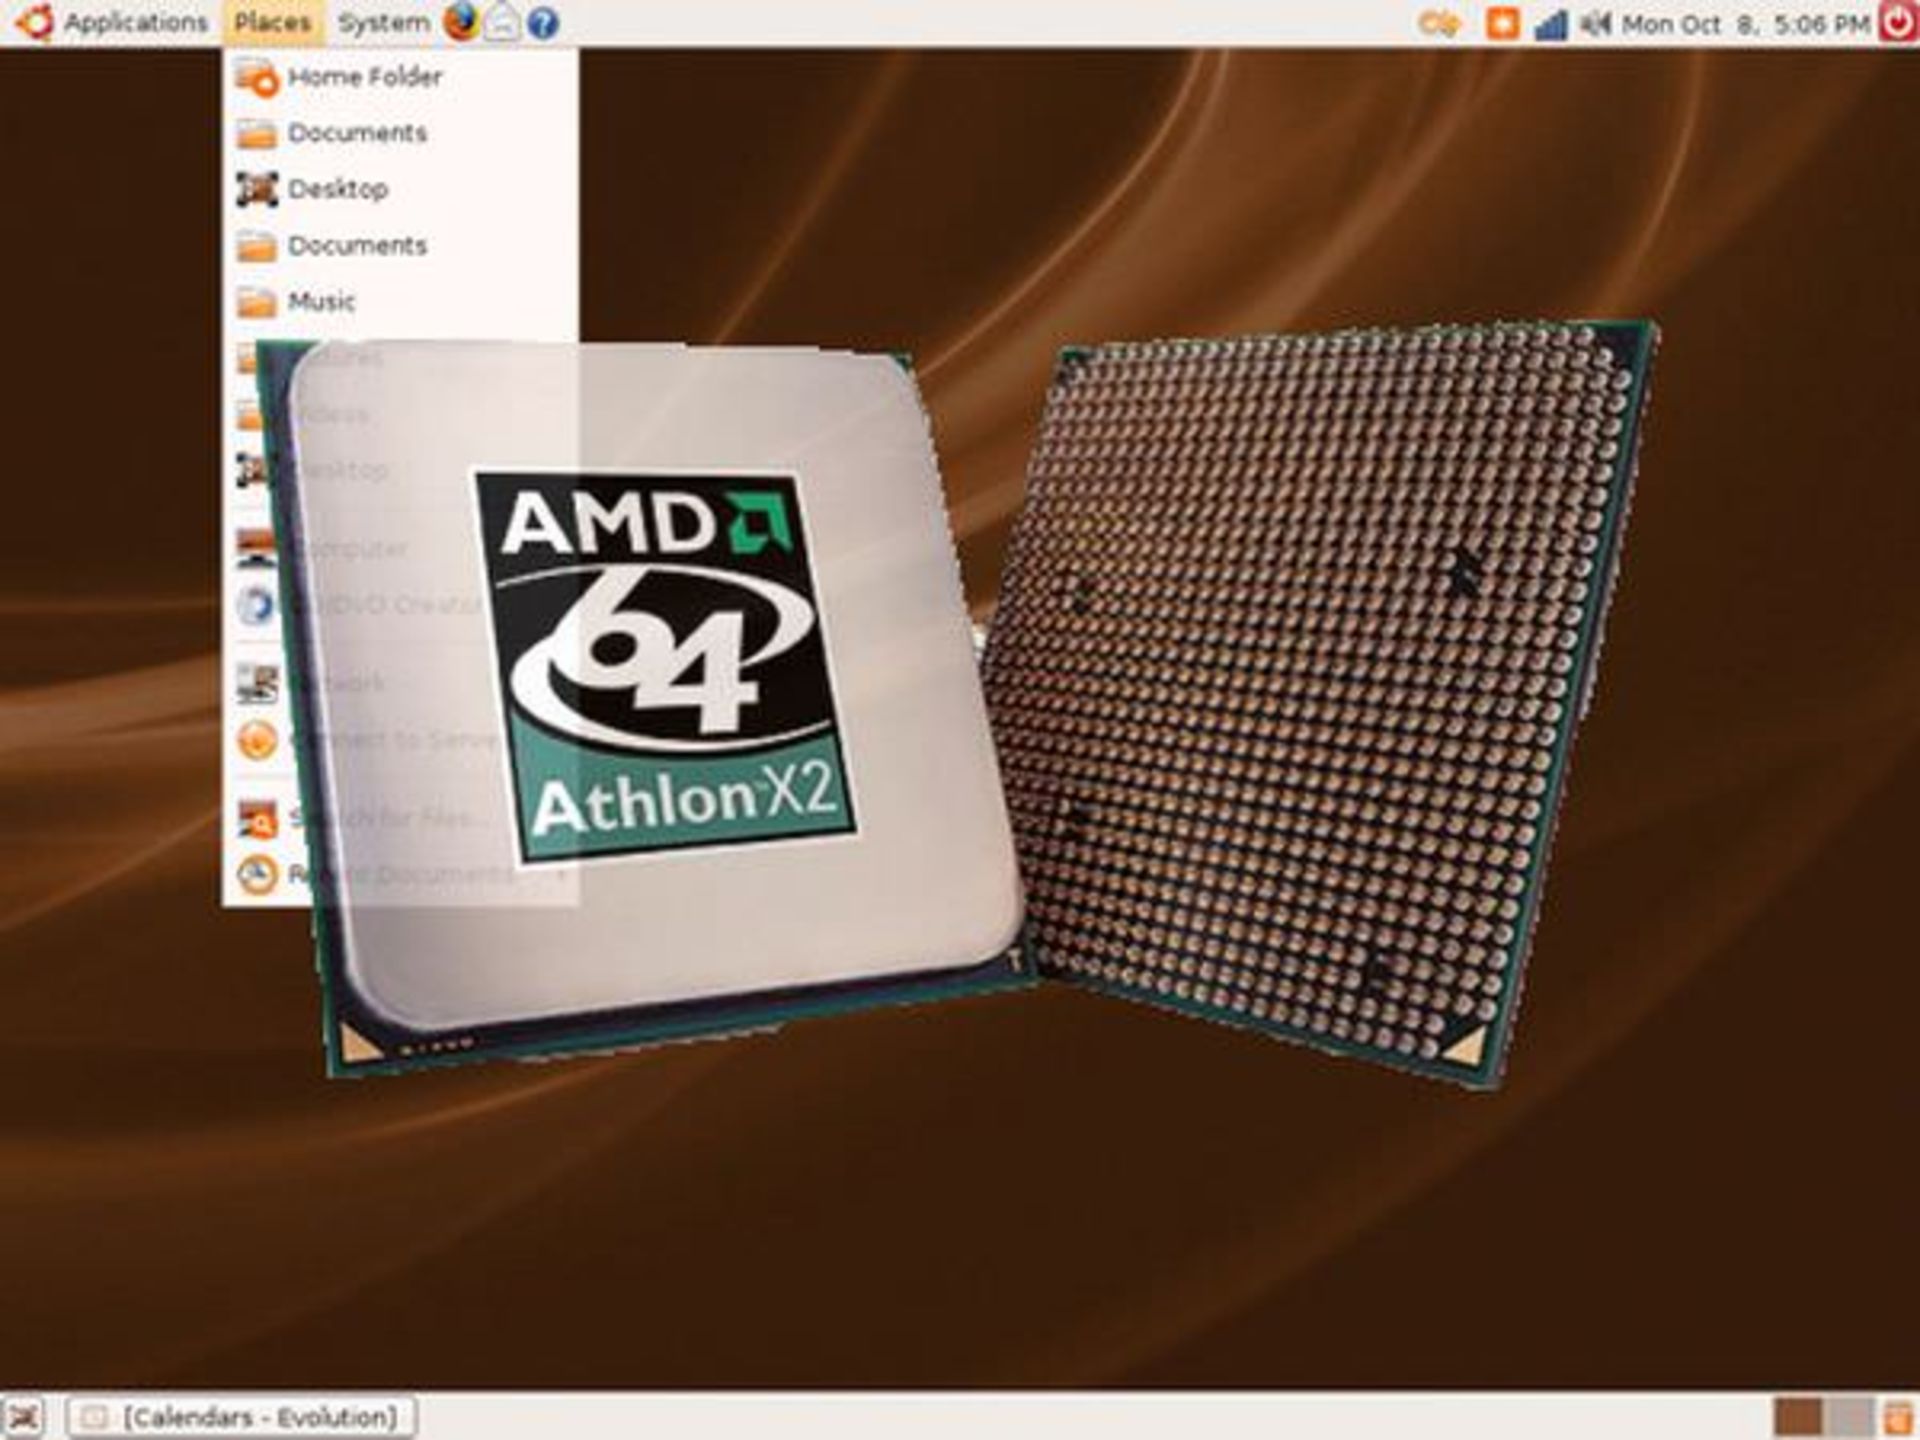 AMD K8: Athlon 64 X2